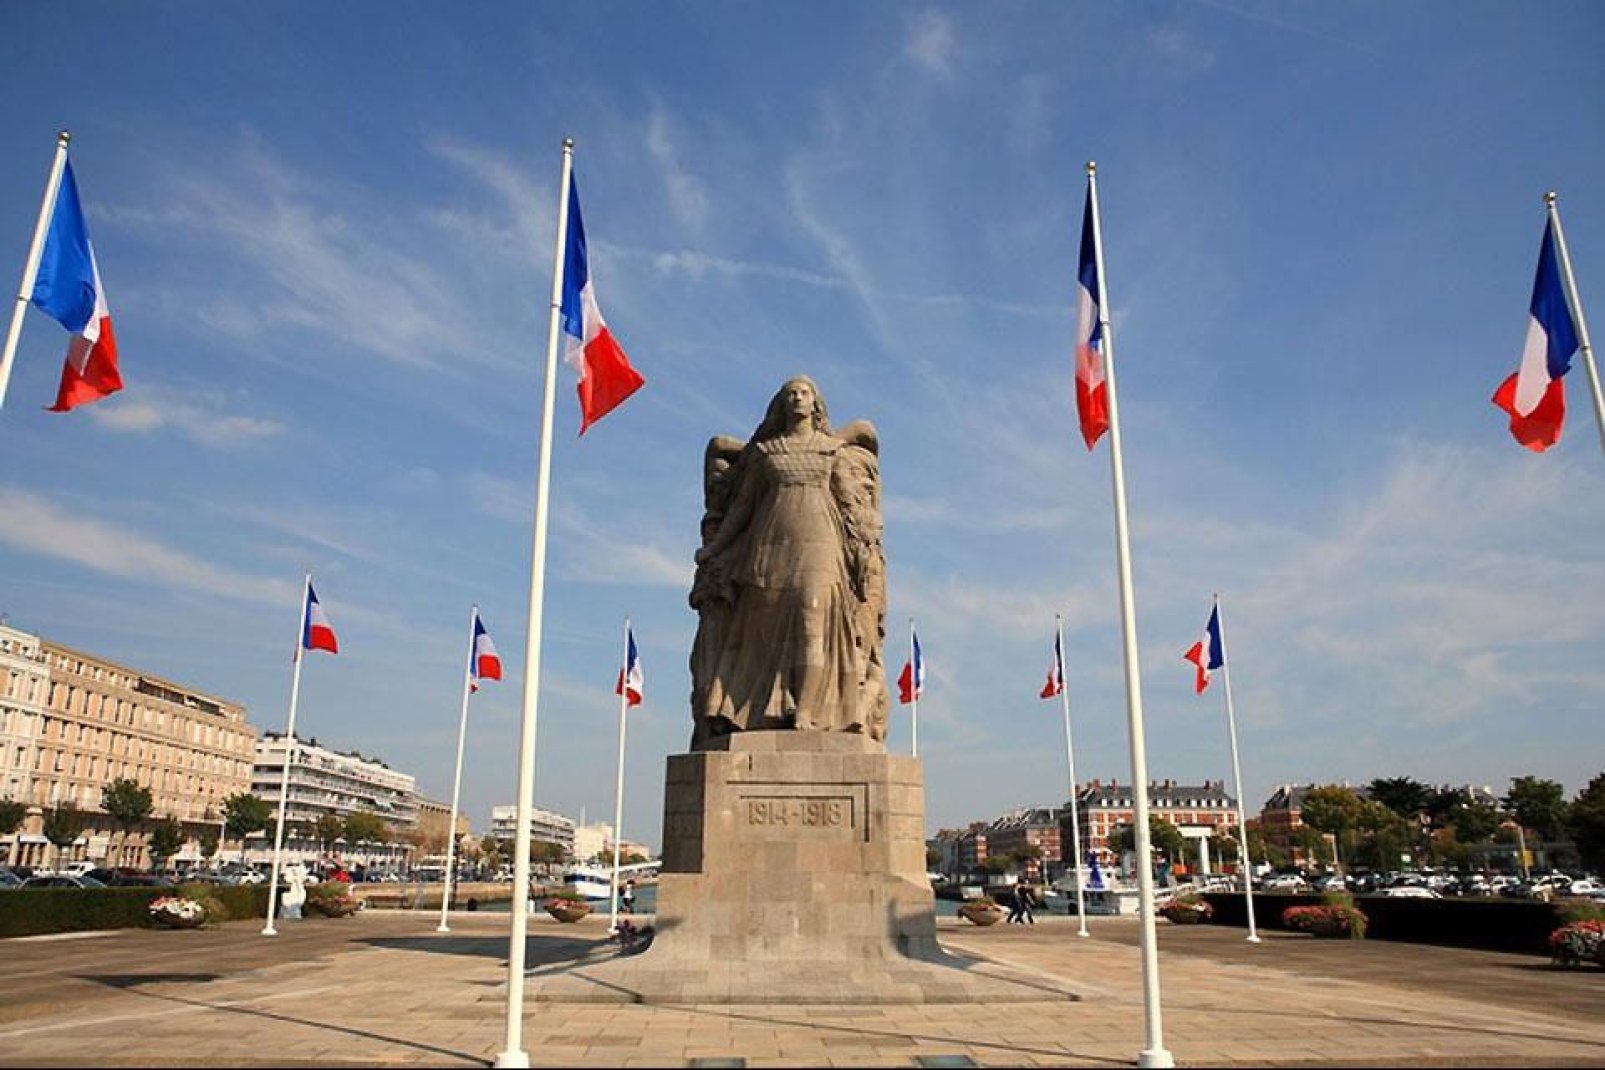 Distrutto durante la Seconda Guerra Mondiale, il centro storico di Le Havre è stato completamente ricostruito dal 1945 al 1964. È stato dichiarato patrimonio mondiale dall'UNESCO.